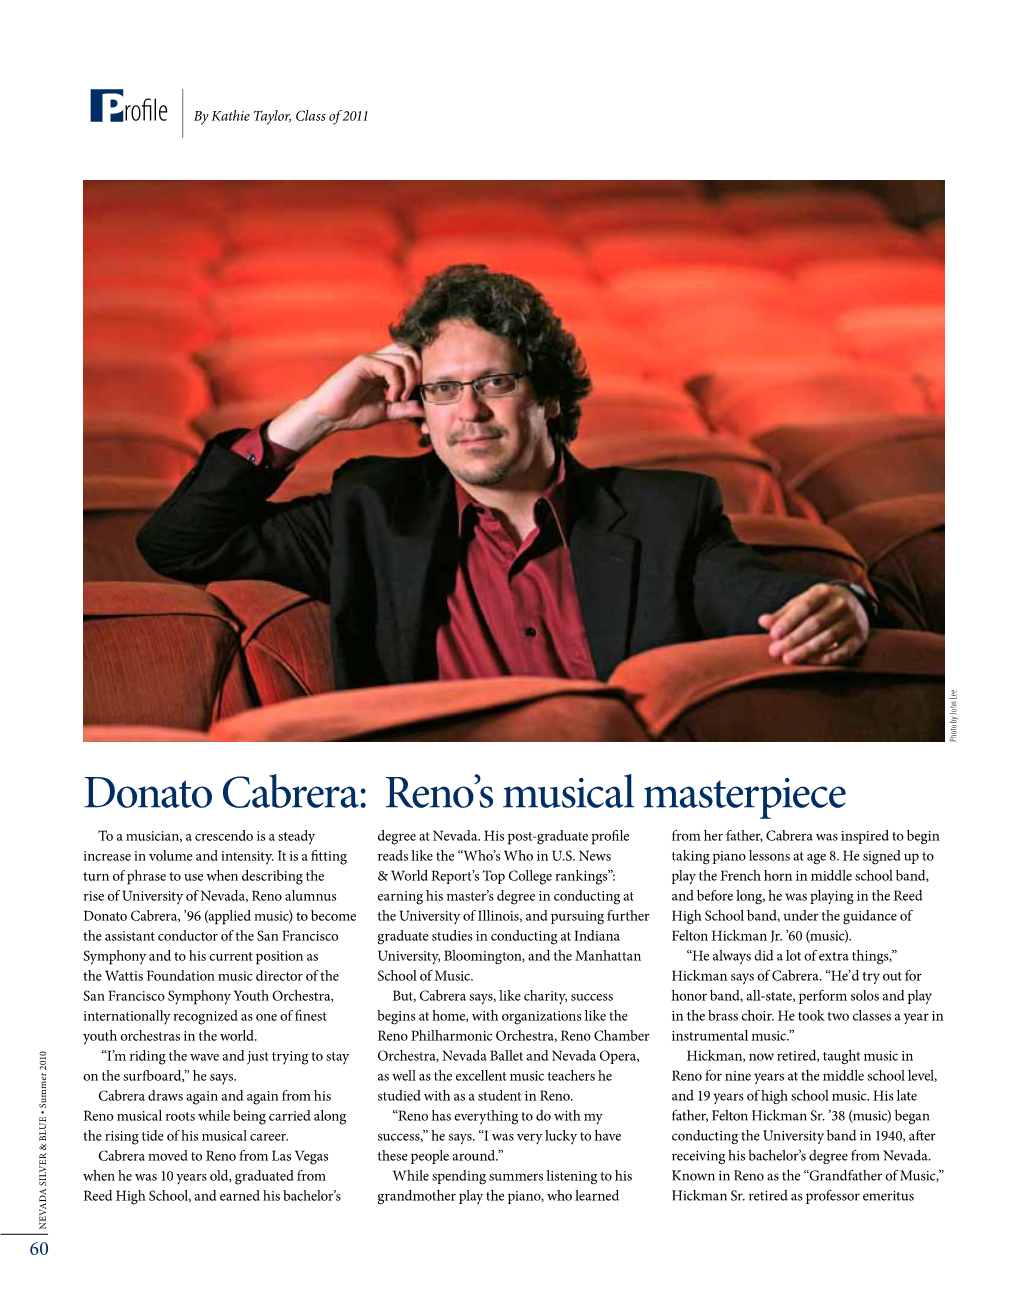 Donato Cabrera: Reno's Musical Masterpiece